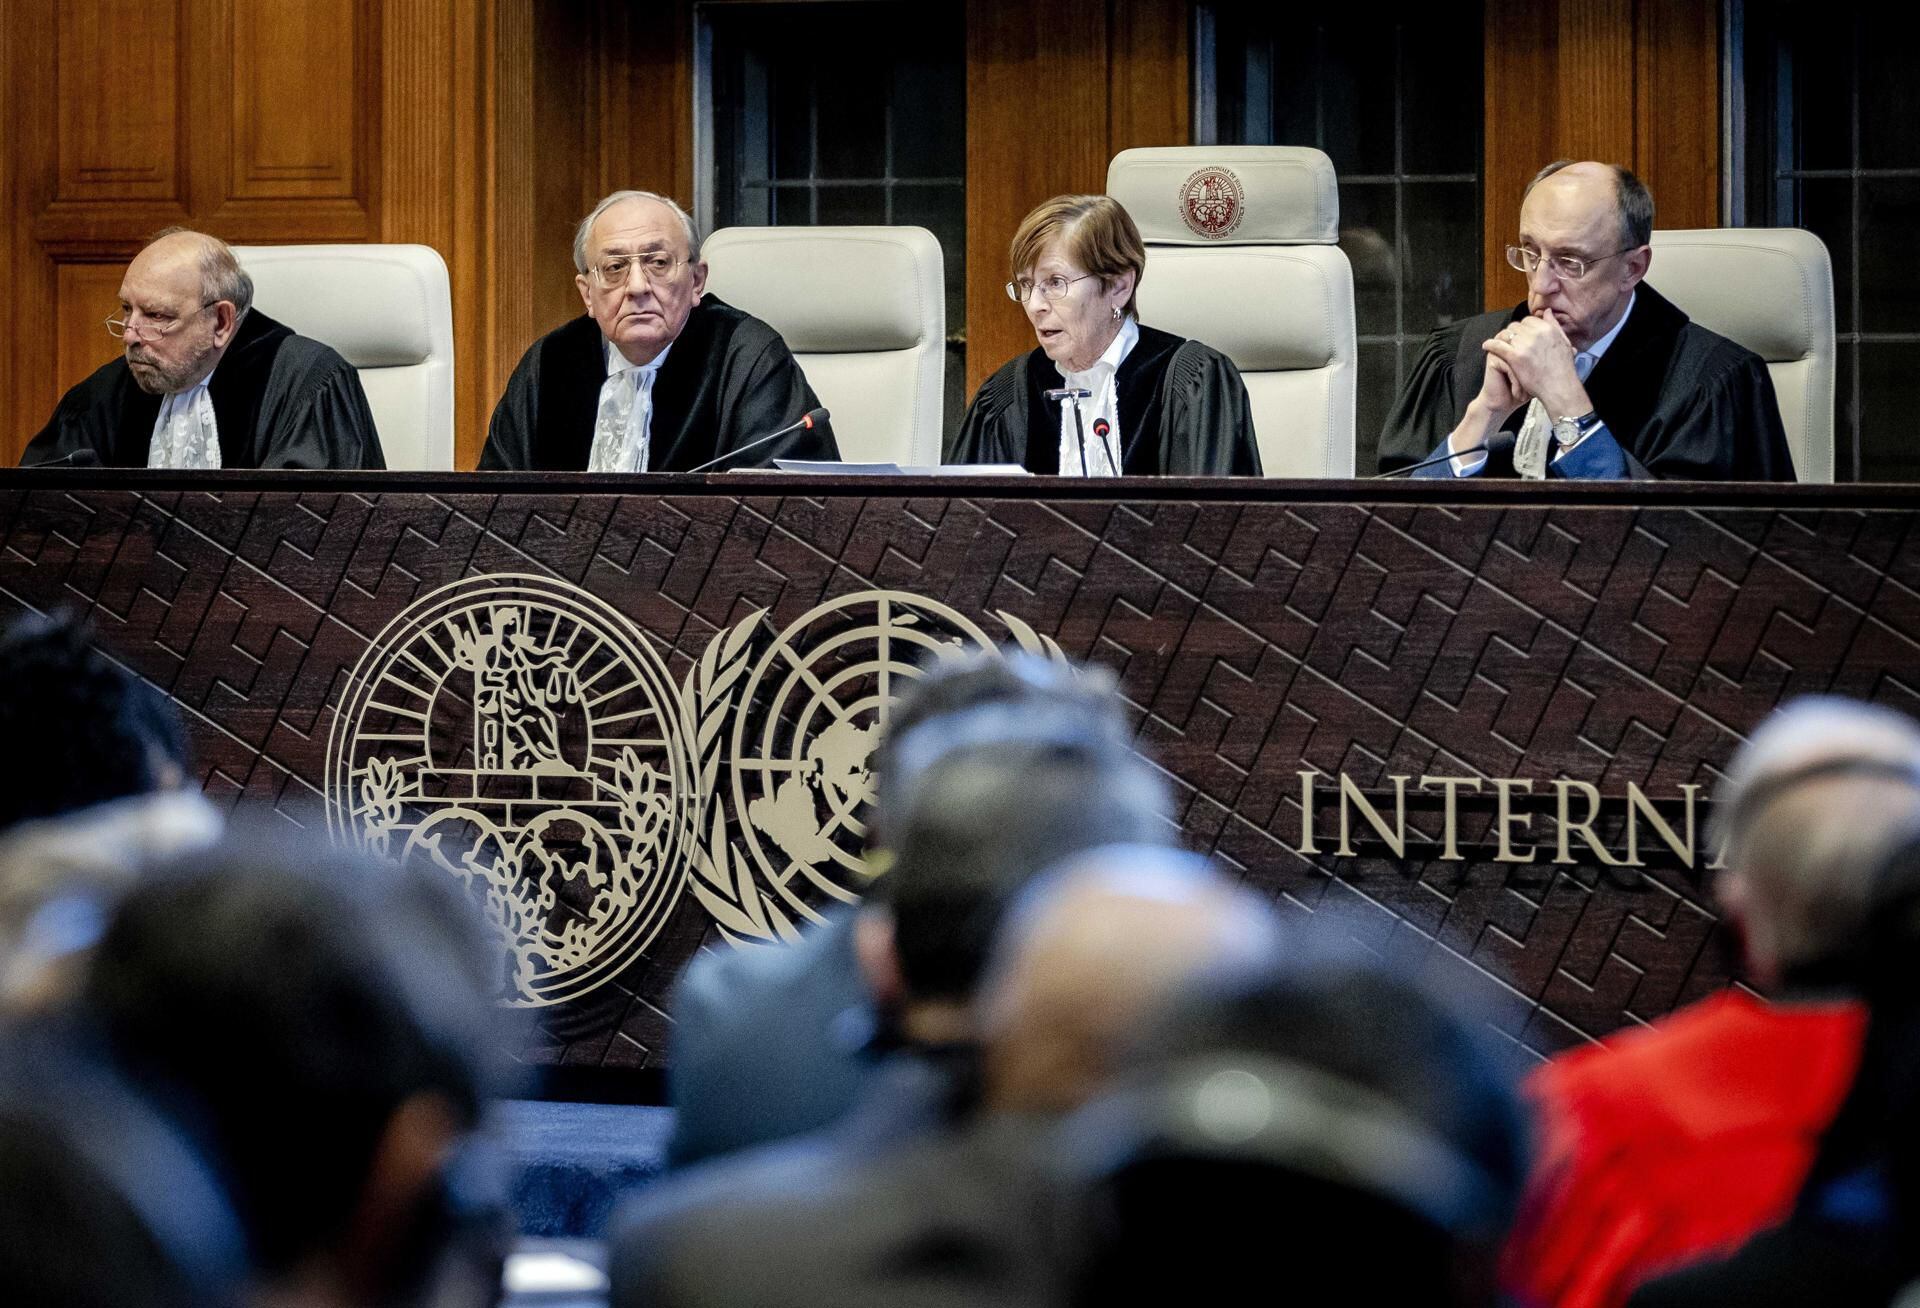 Día del ‘Juicio Final’ en crisis México-Ecuador: ¿Cuándo la Corte Internacional dará veredicto?